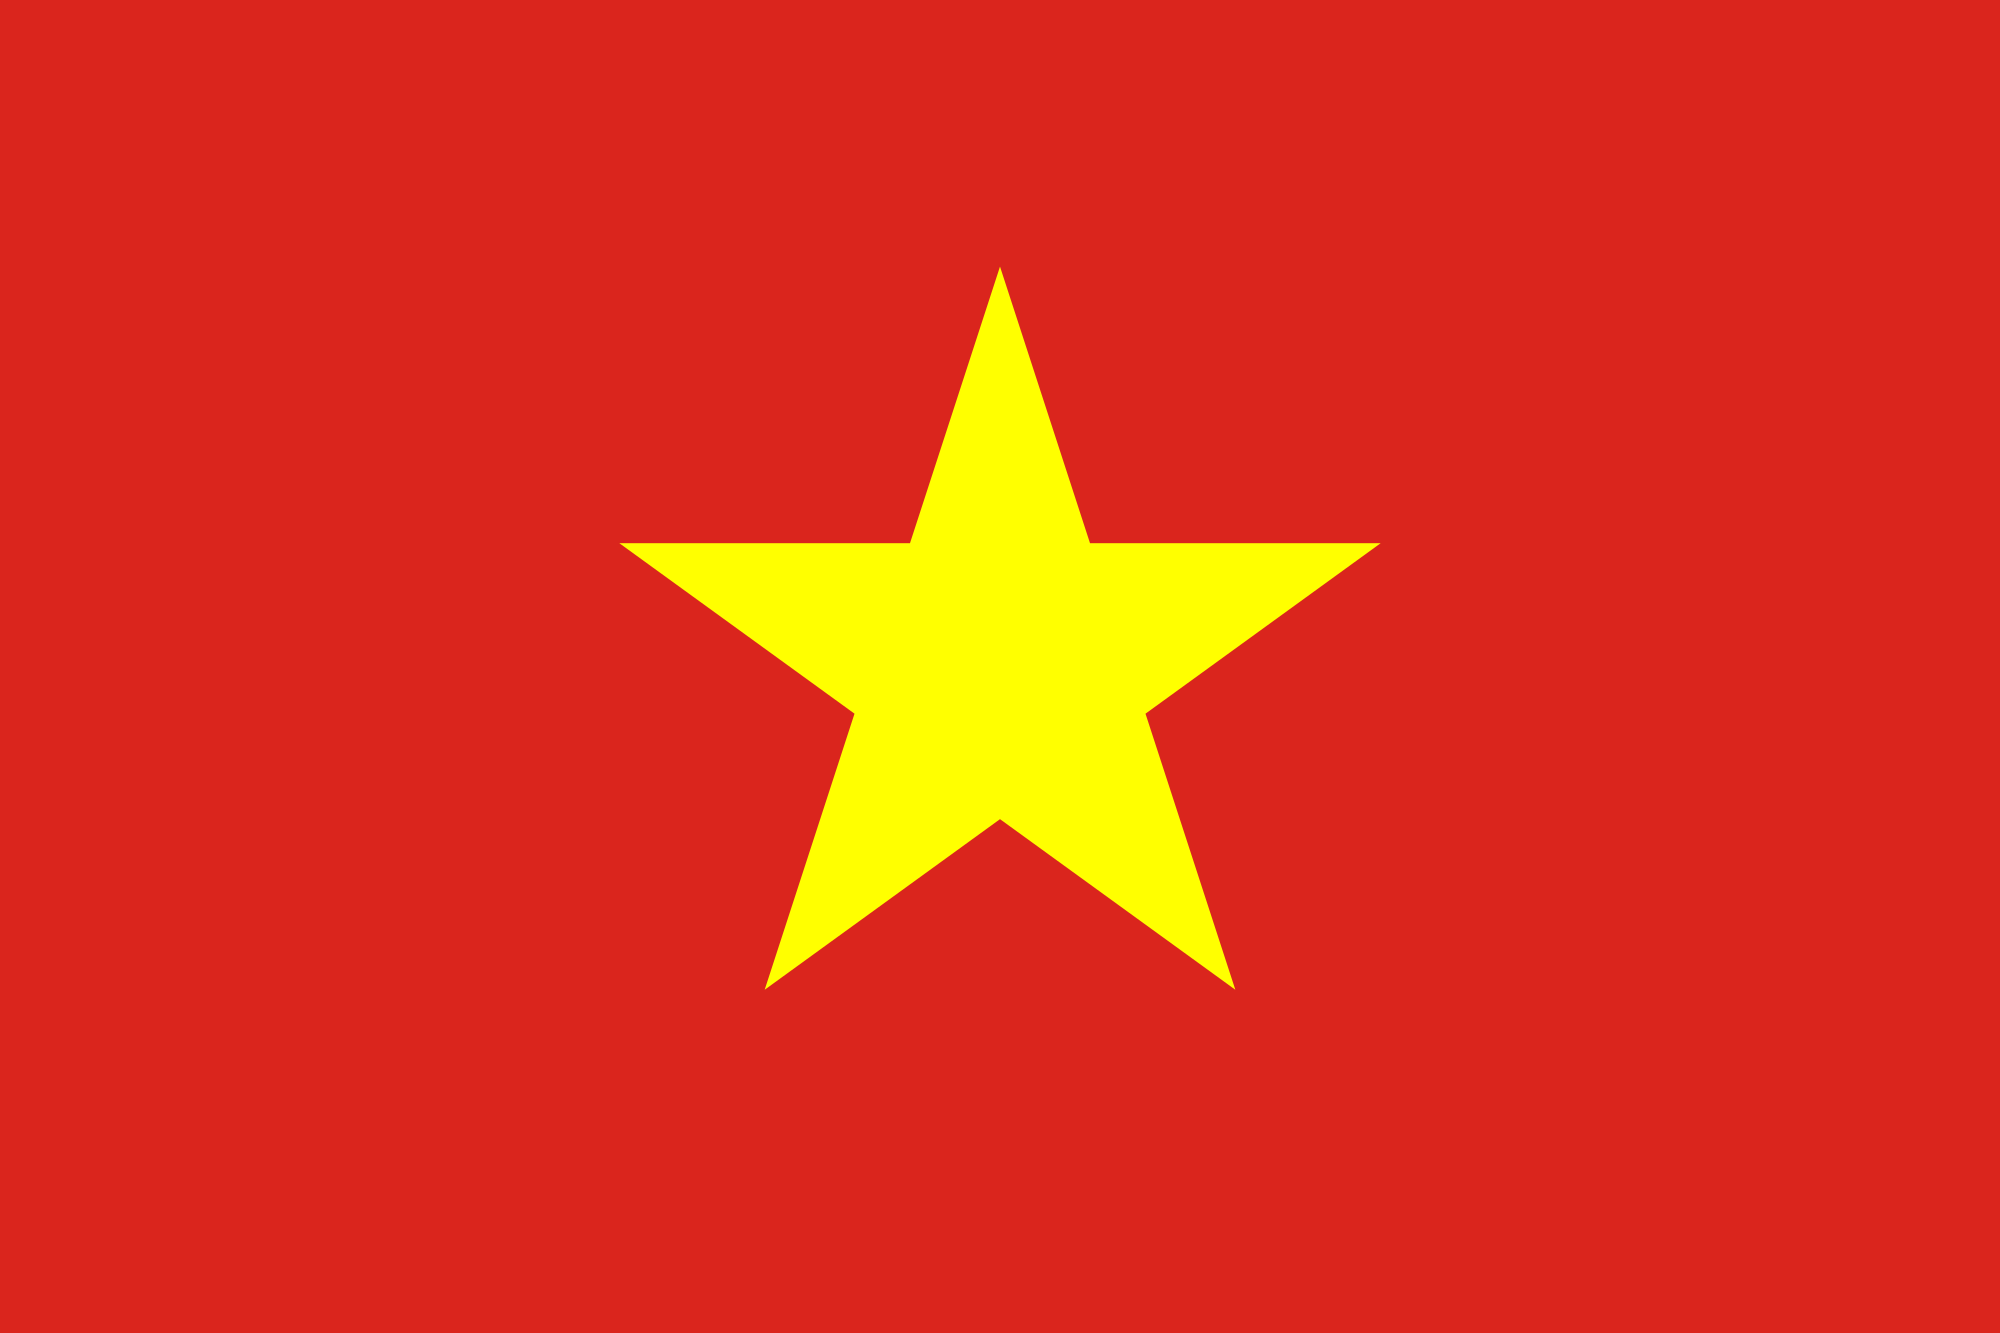 Cờ Tổ Quốc - Mỗi khi nghe đến cờ Tổ Quốc, chúng ta đều cảm thấy tình cảm và niềm tự hào về nền văn hóa truyền thống của đất nước. Năm 2024, hình ảnh cờ Tổ Quốc sẽ được đem đến với những tình khúc tuyệt đẹp, cùng với những bức ảnh lưu giữ những khoảnh khắc ý nghĩa của người Việt Nam. Cùng chiêm ngưỡng và tự hào về bức tranh văn hóa đậm đà, mang tên Việt Nam.